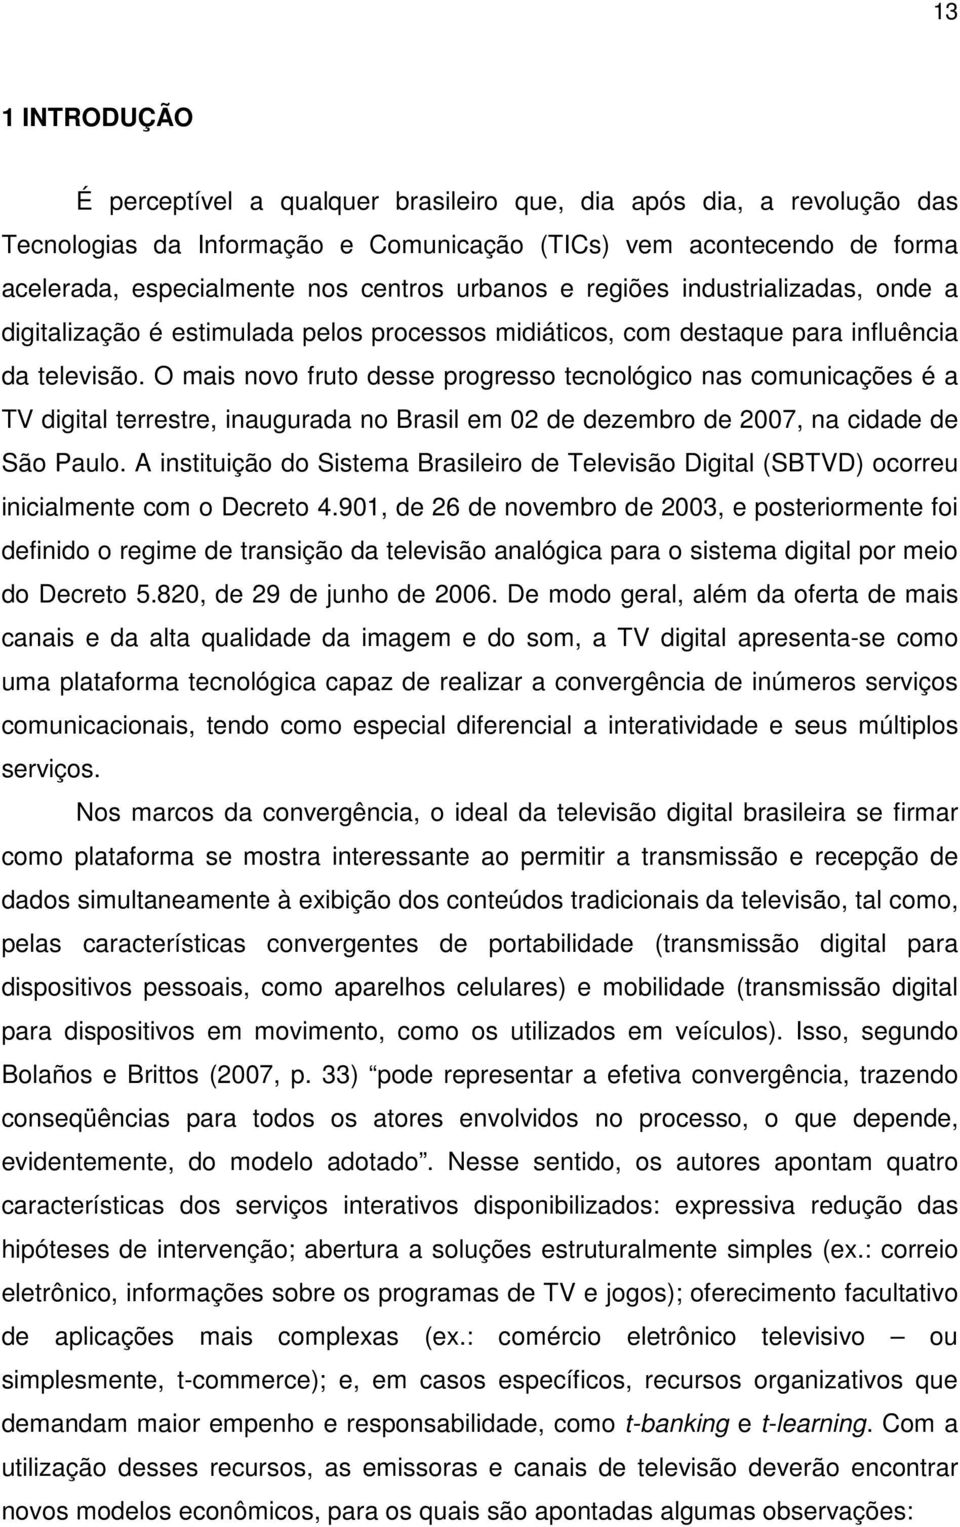 O mais novo fruto desse progresso tecnológico nas comunicações é a TV digital terrestre, inaugurada no Brasil em 02 de dezembro de 2007, na cidade de São Paulo.